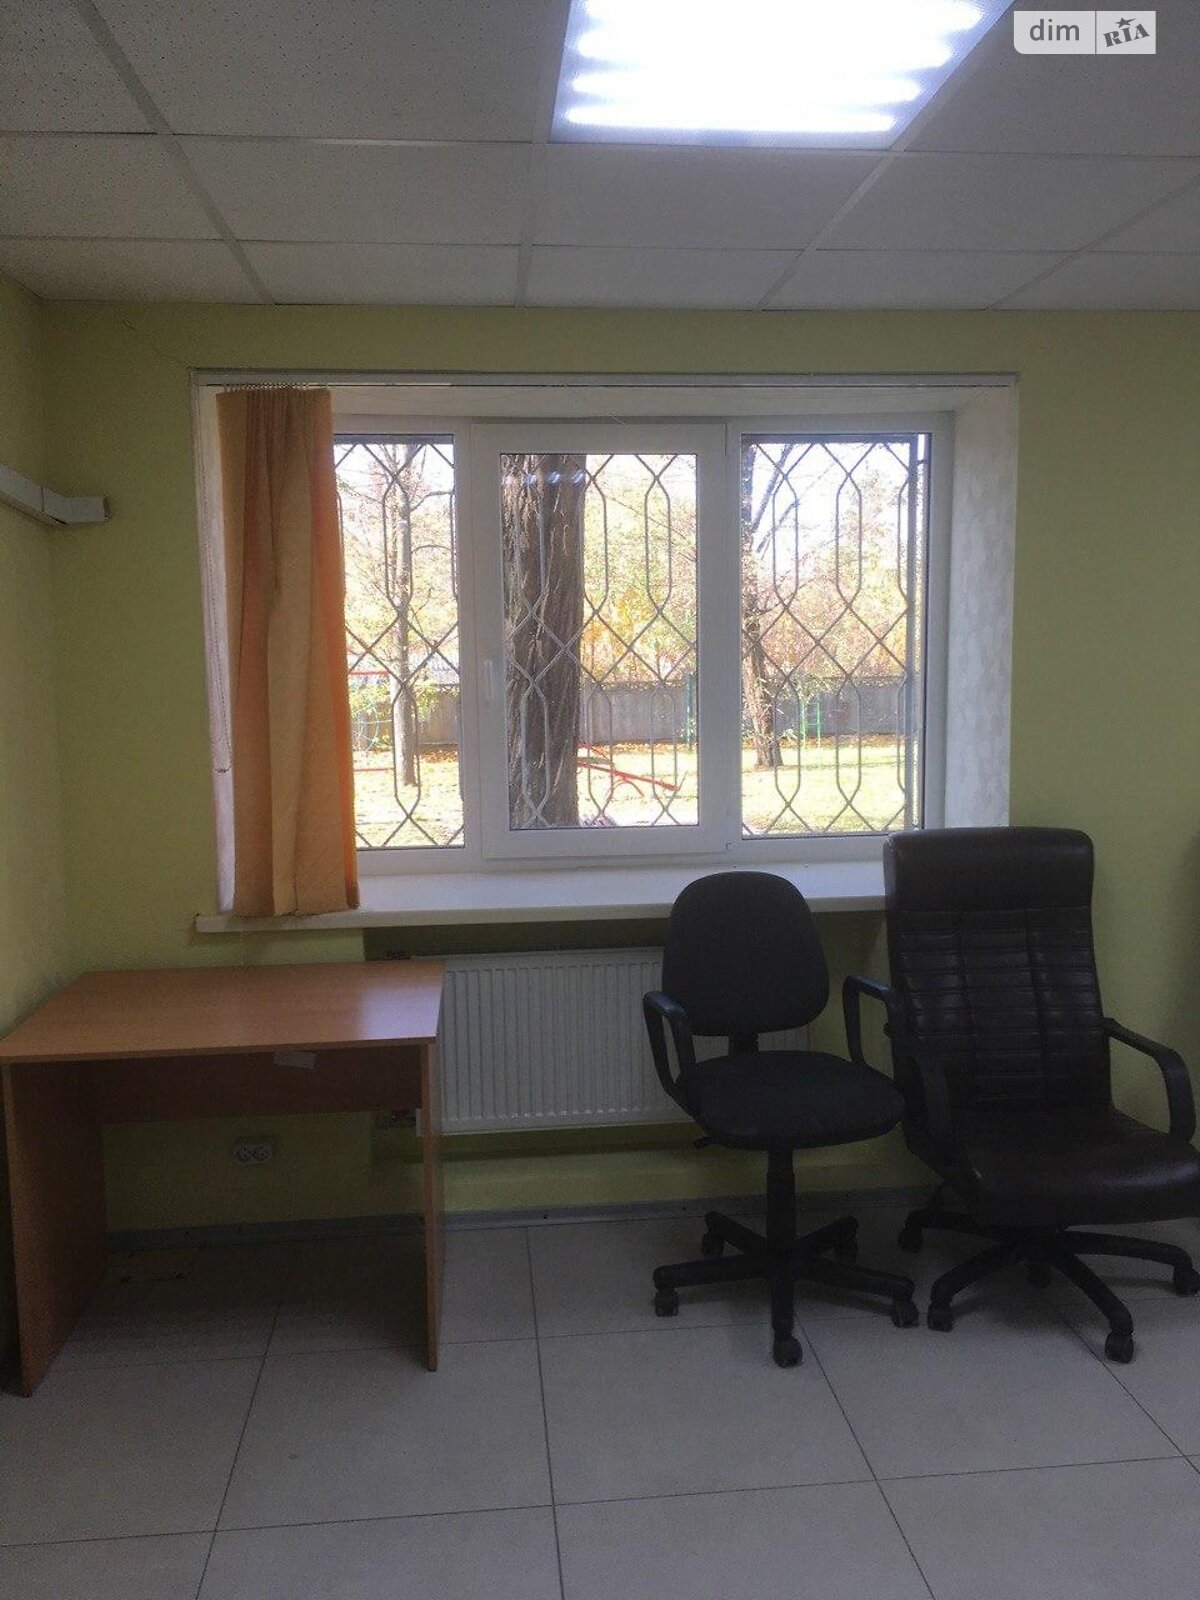 Аренда офисного помещения в Харькове, Шекспира улица 9, помещений - 3, этаж - 1 фото 1